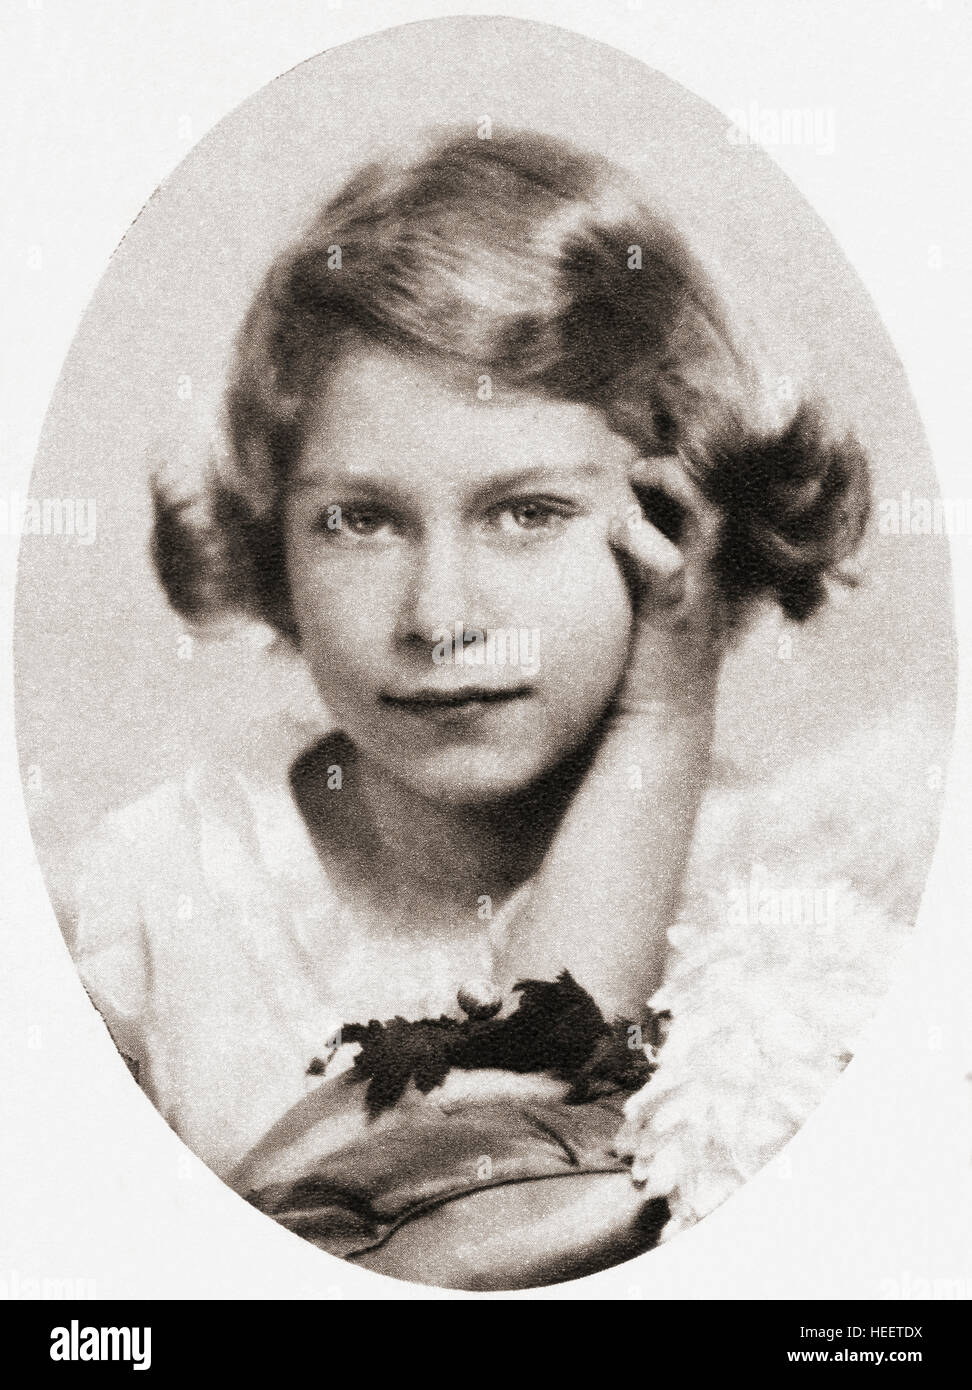 Prinzessin Elizabeth, zukünftige Königin Elizabeth II., hier im Alter von neun Jahren gesehen. Elizabeth II, 1926 - 2022. Königin des Vereinigten Königreichs, Kanada, Australien und Neuseeland. Stockfoto